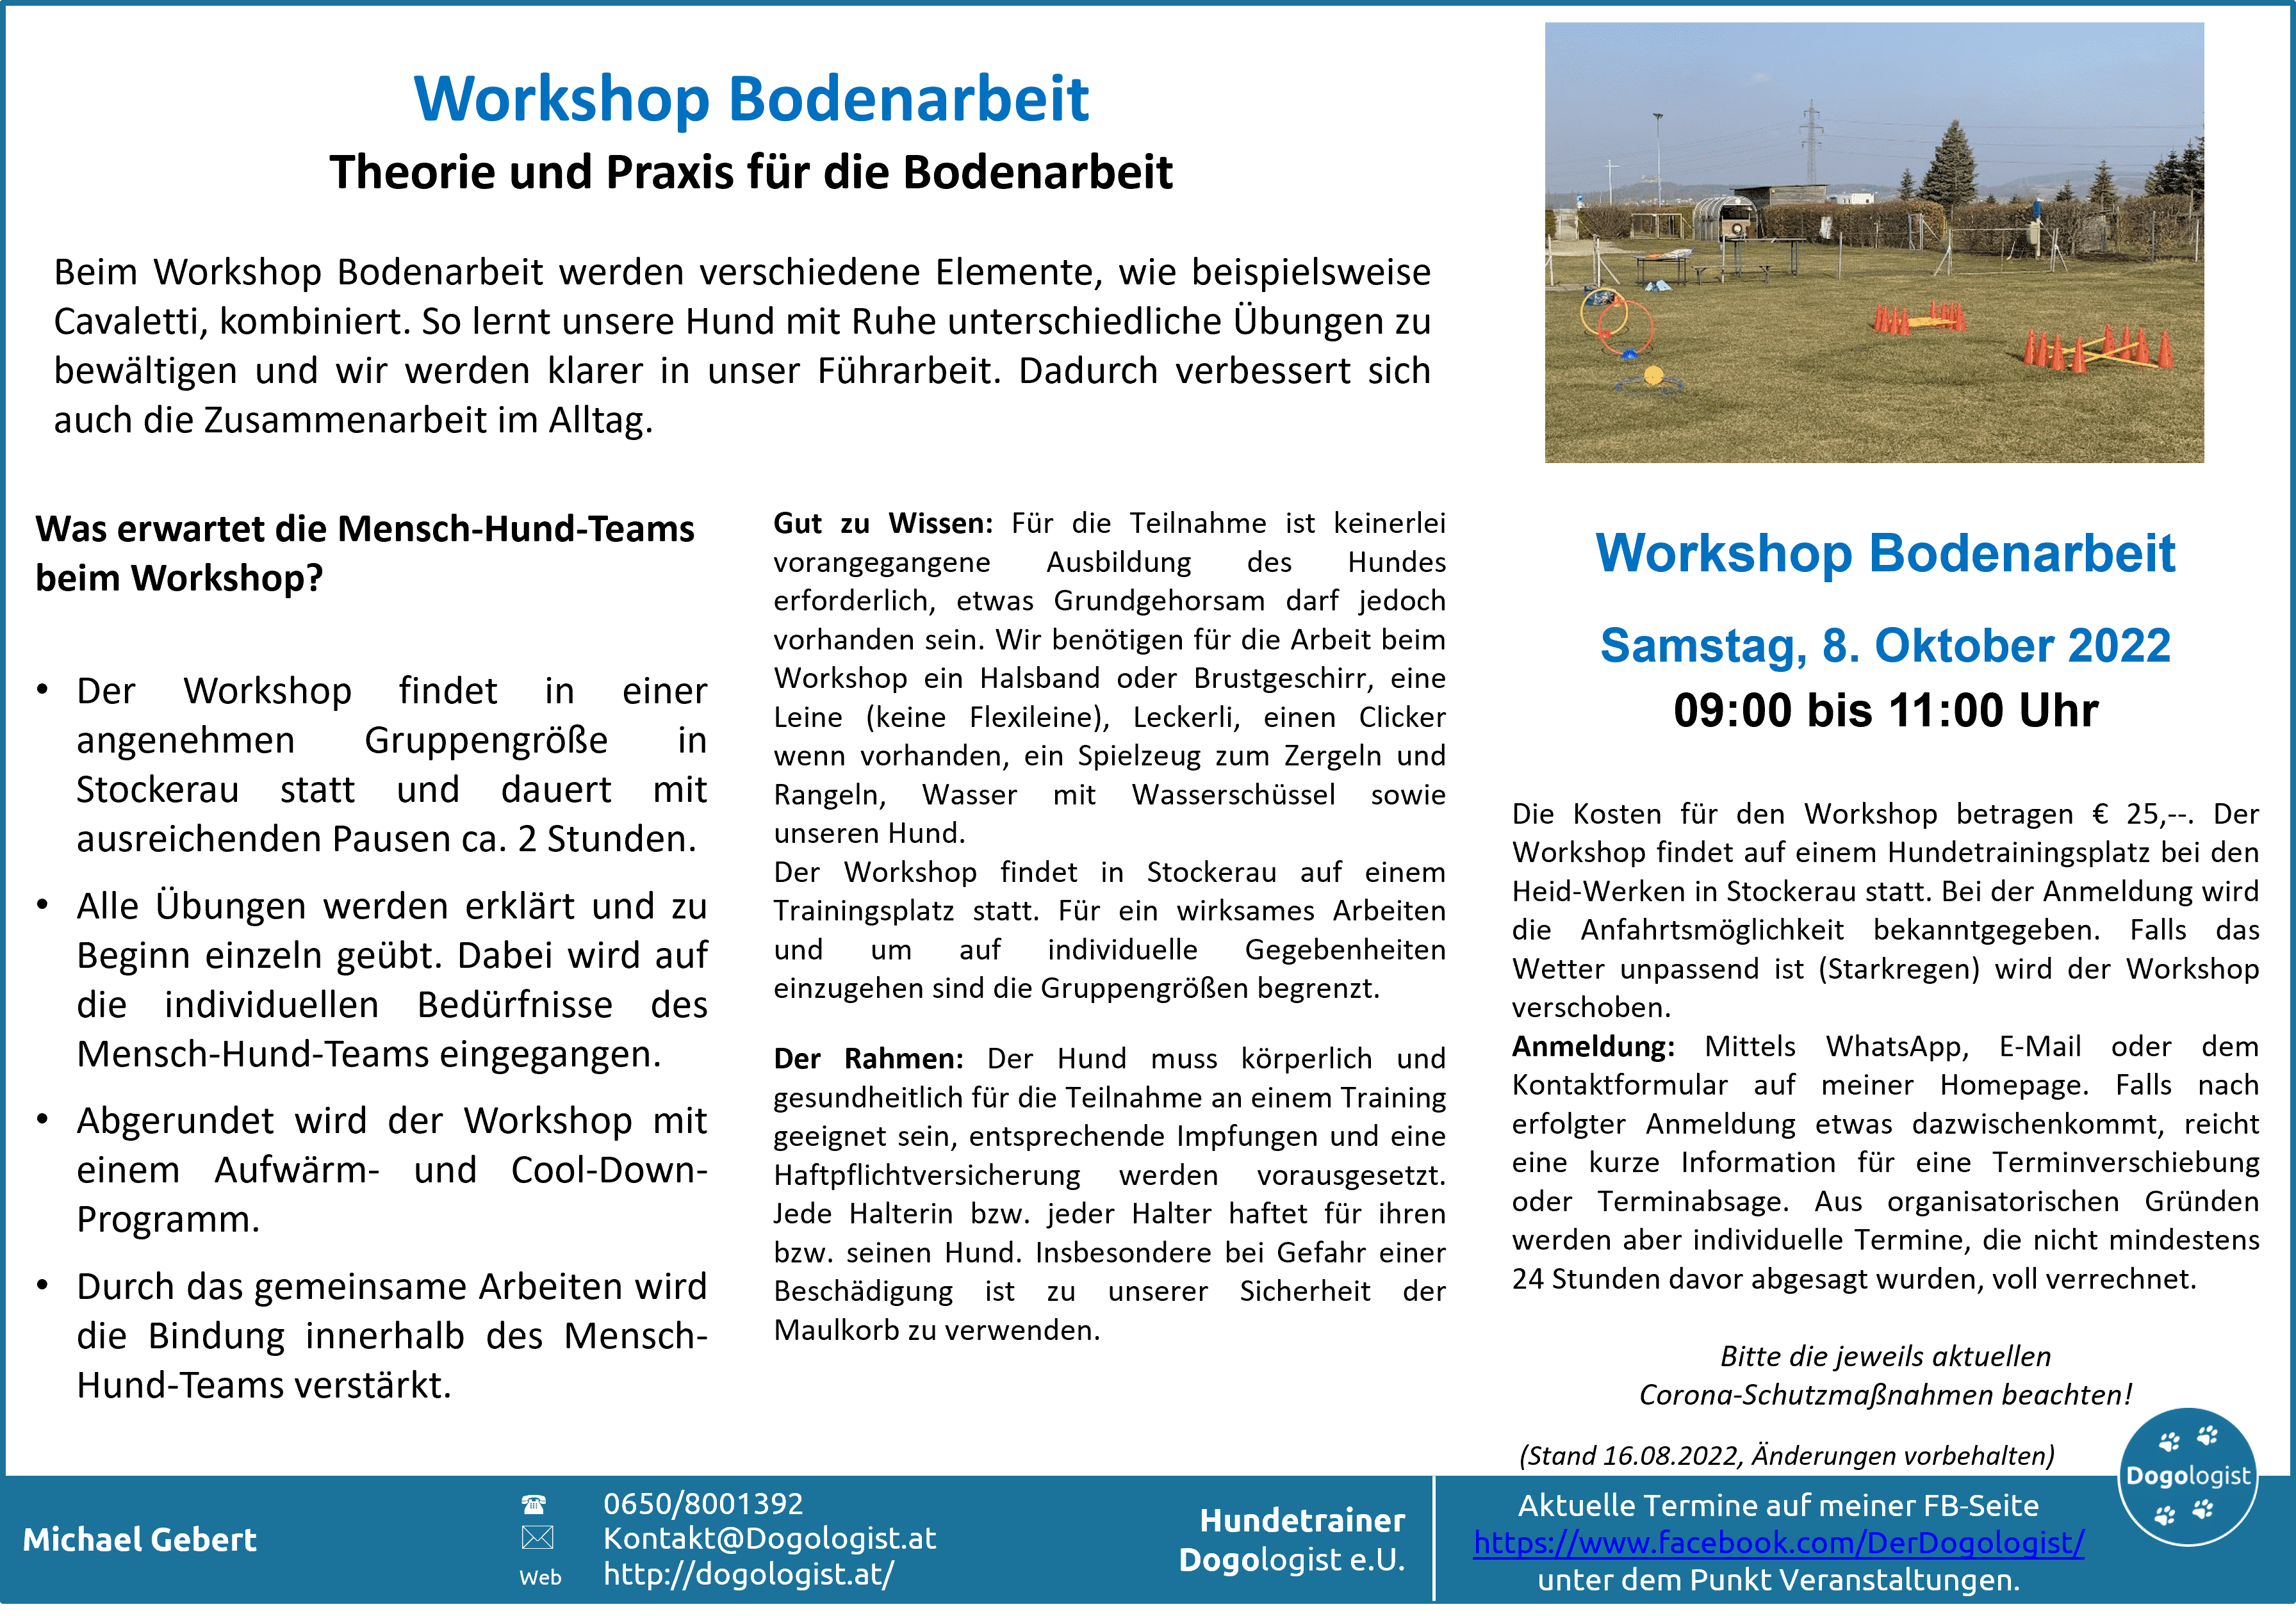 Workshop Bodenarbeit am Samstag, dem 8. Oktober 2022